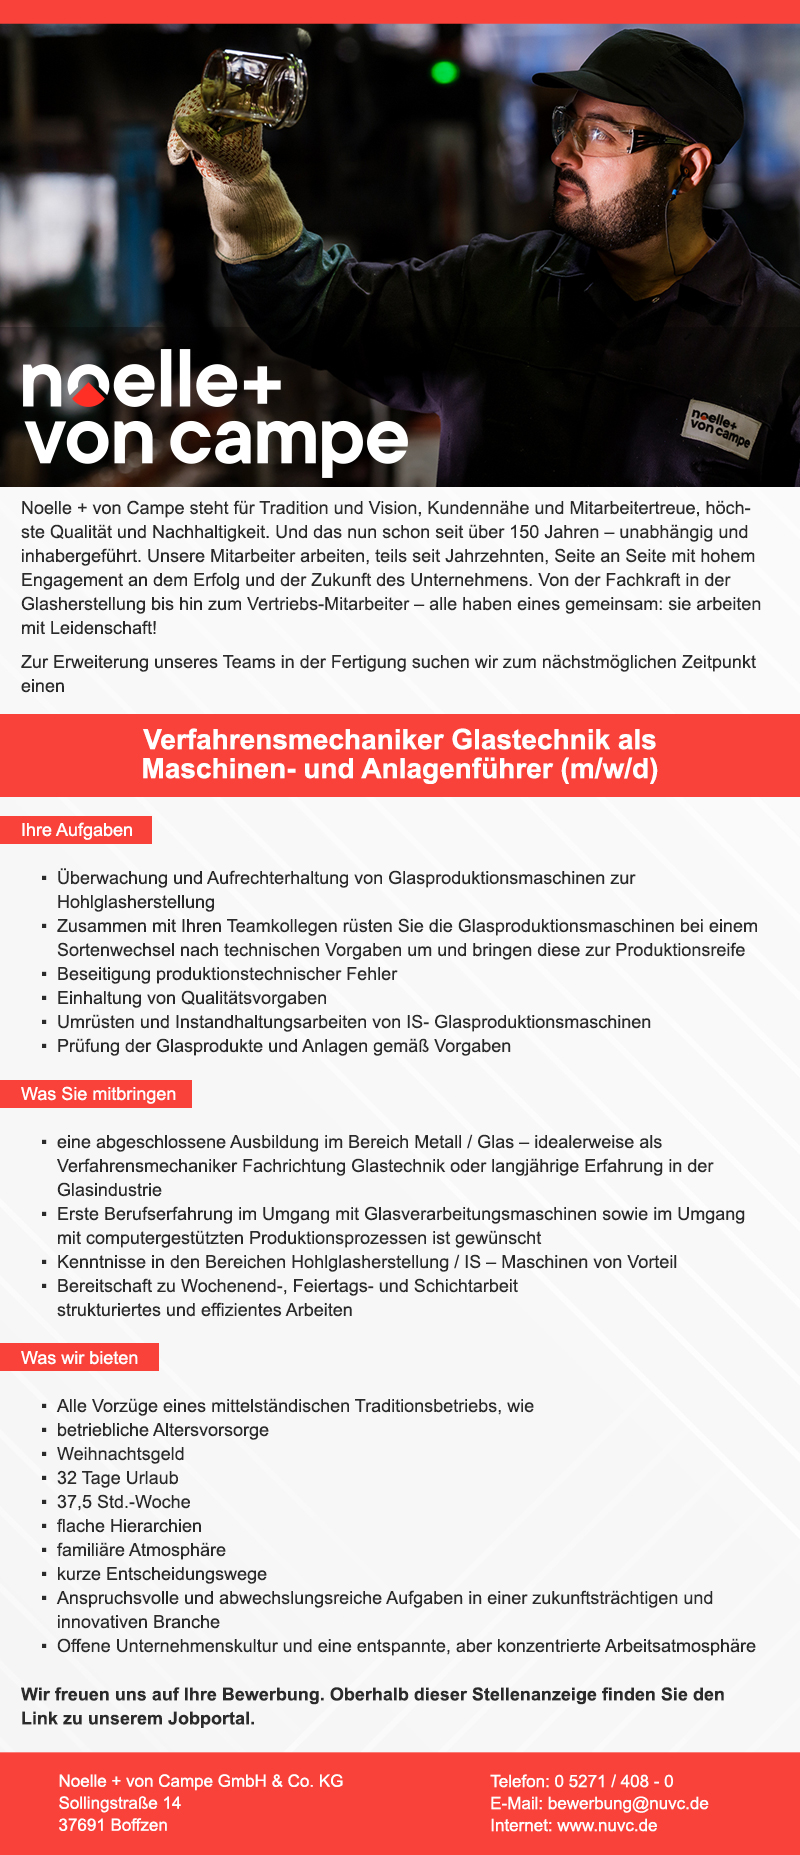 Verfahrensmechaniker Glastechnik als Maschinen- und Anlagenführer (m/w/d) - Noelle + von Campe GmbH & Co. KG